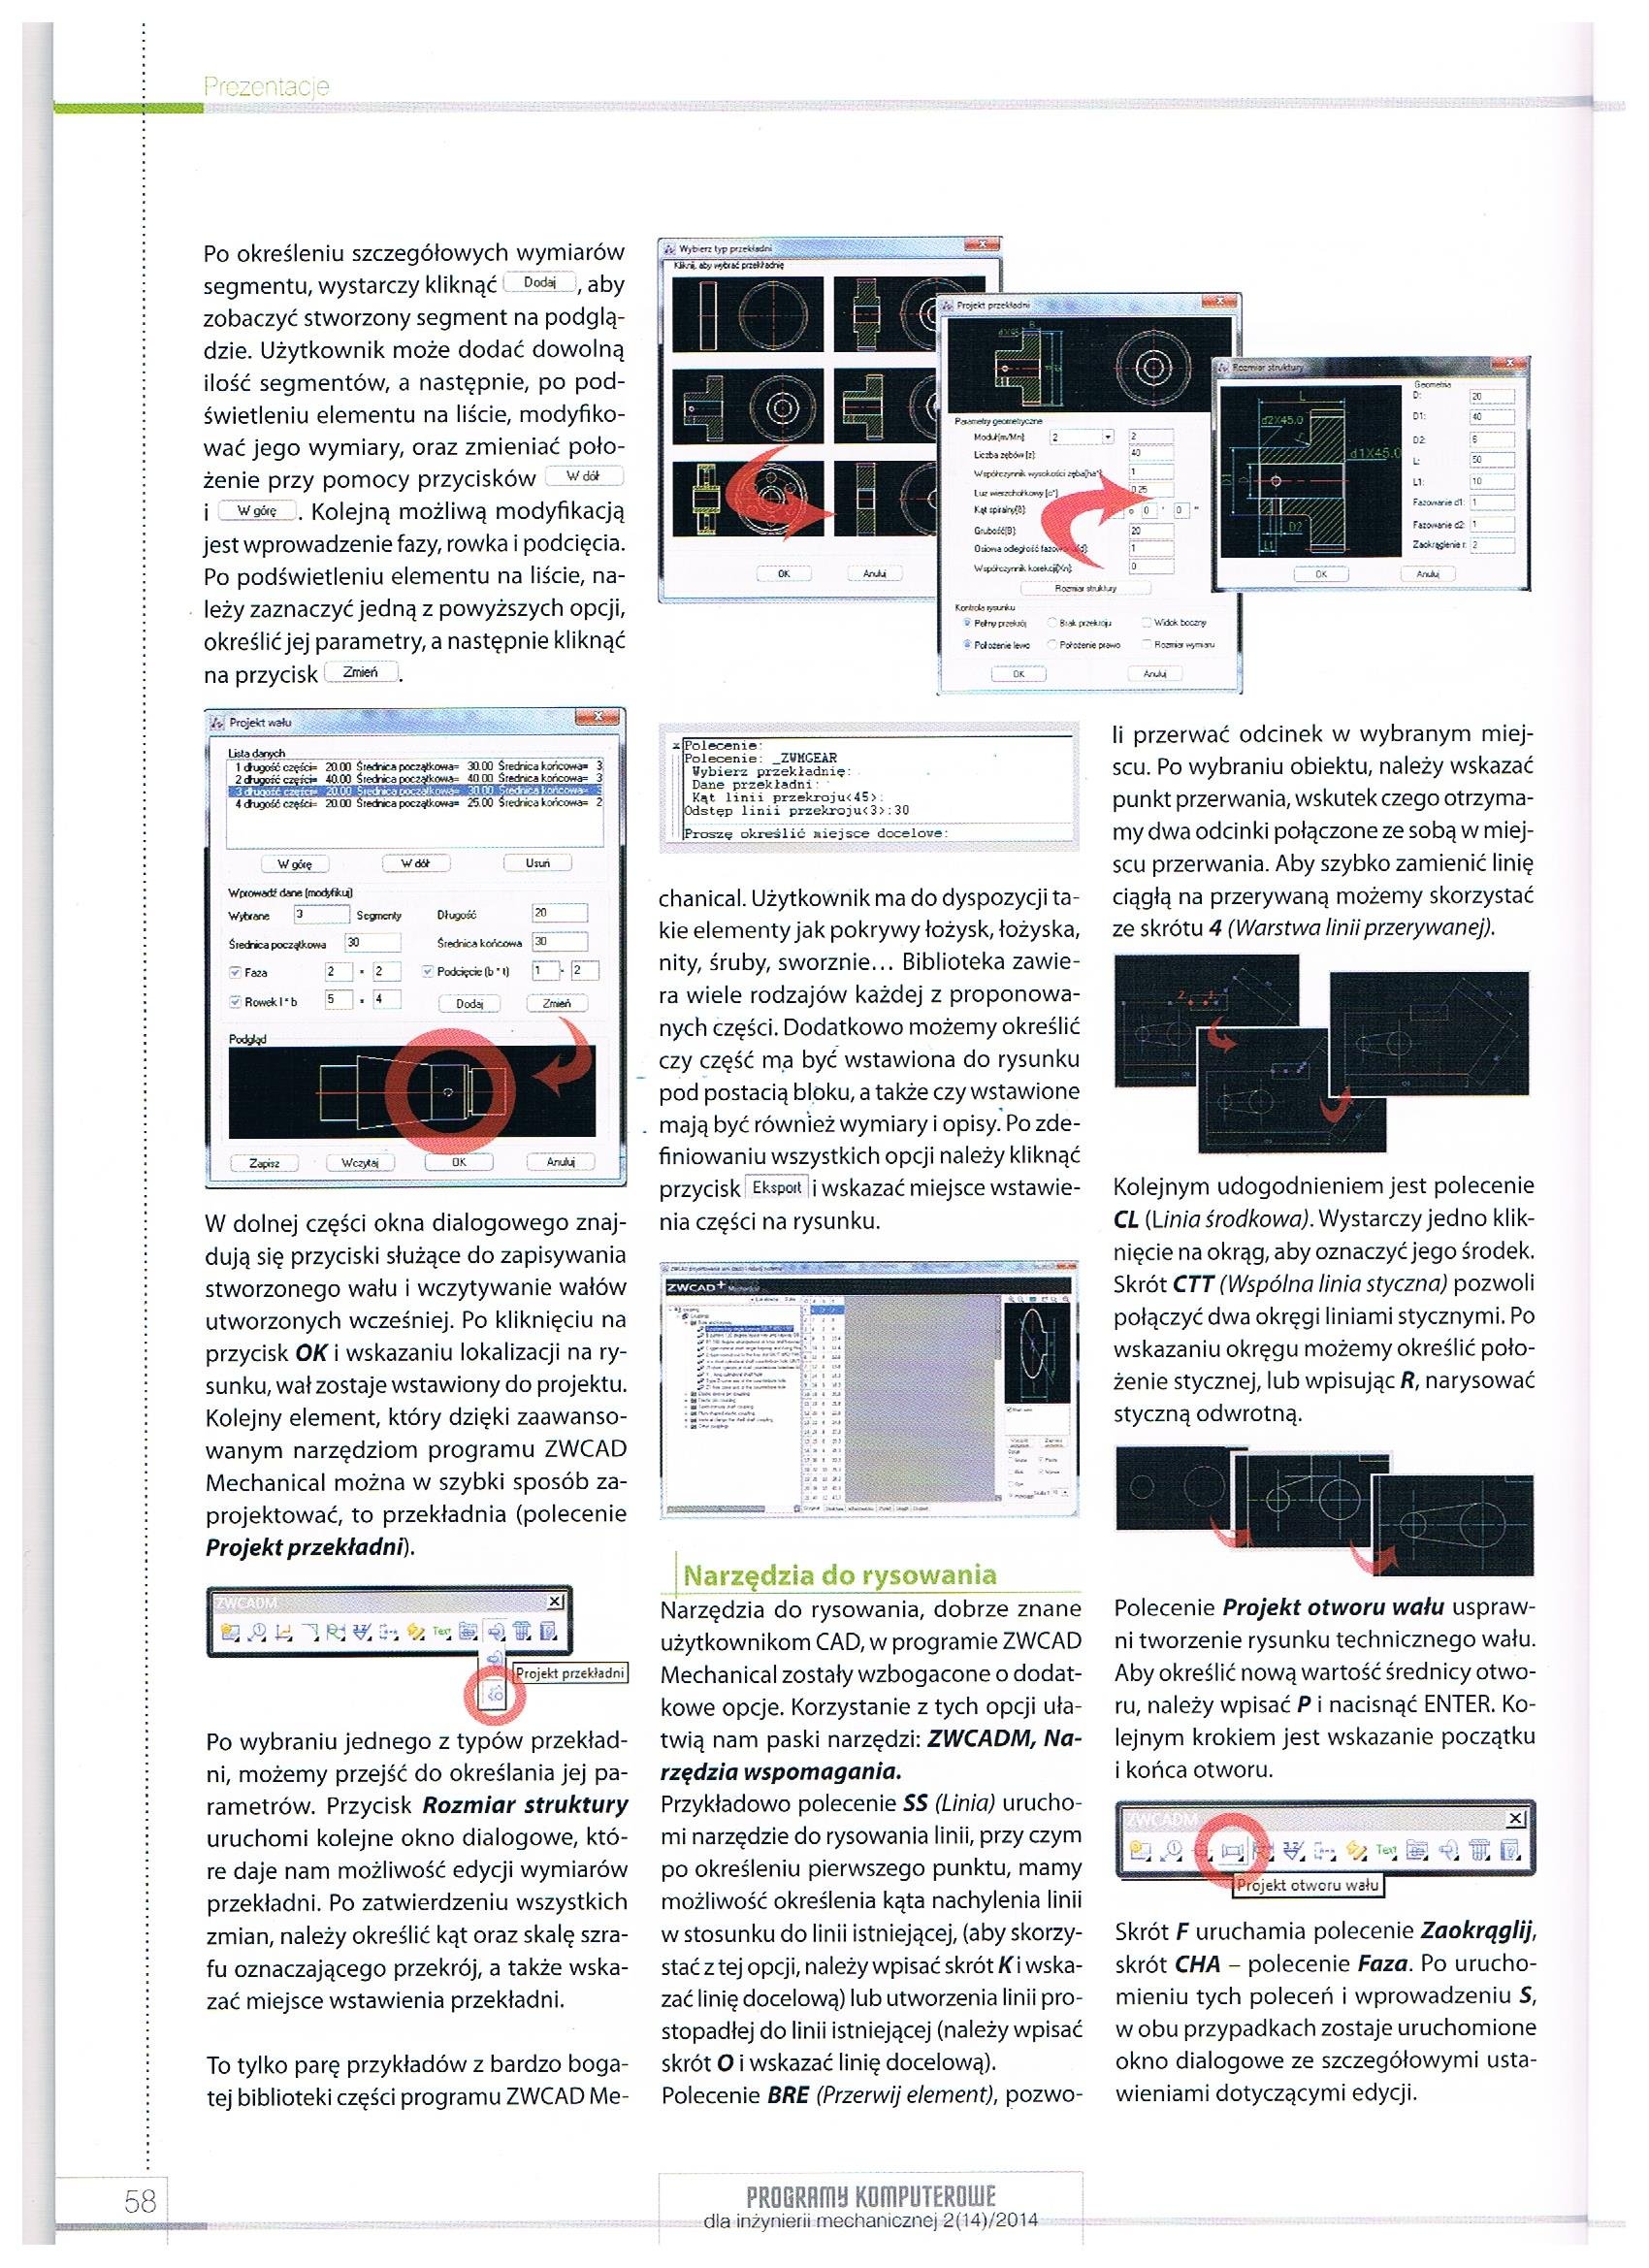 Programy komputerowe dla inzynierii mechanicznej 2-14-2014 str. 58